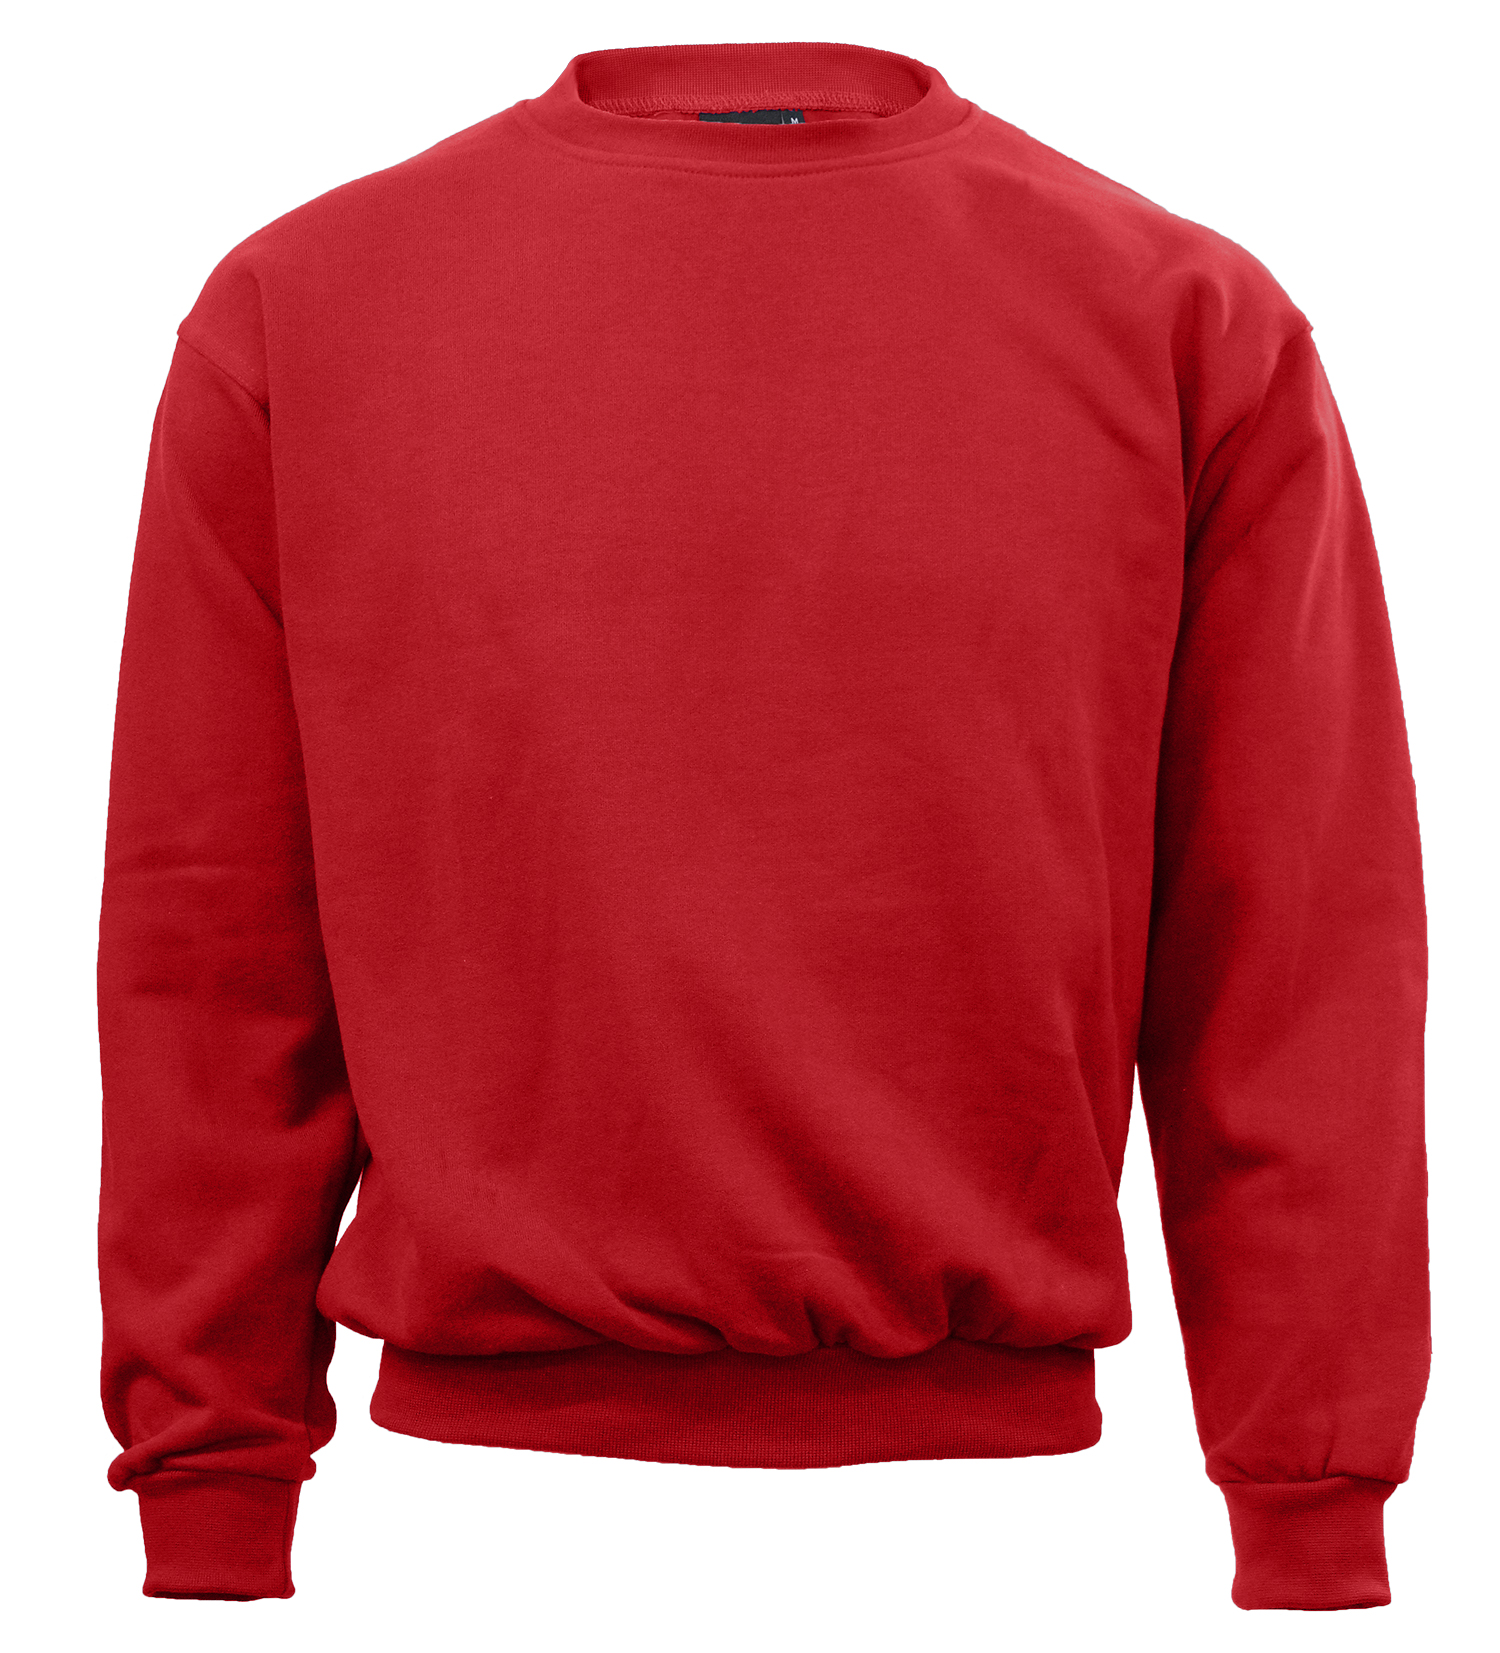 Red Sweatshirt (2601) - Quality Schoolwear